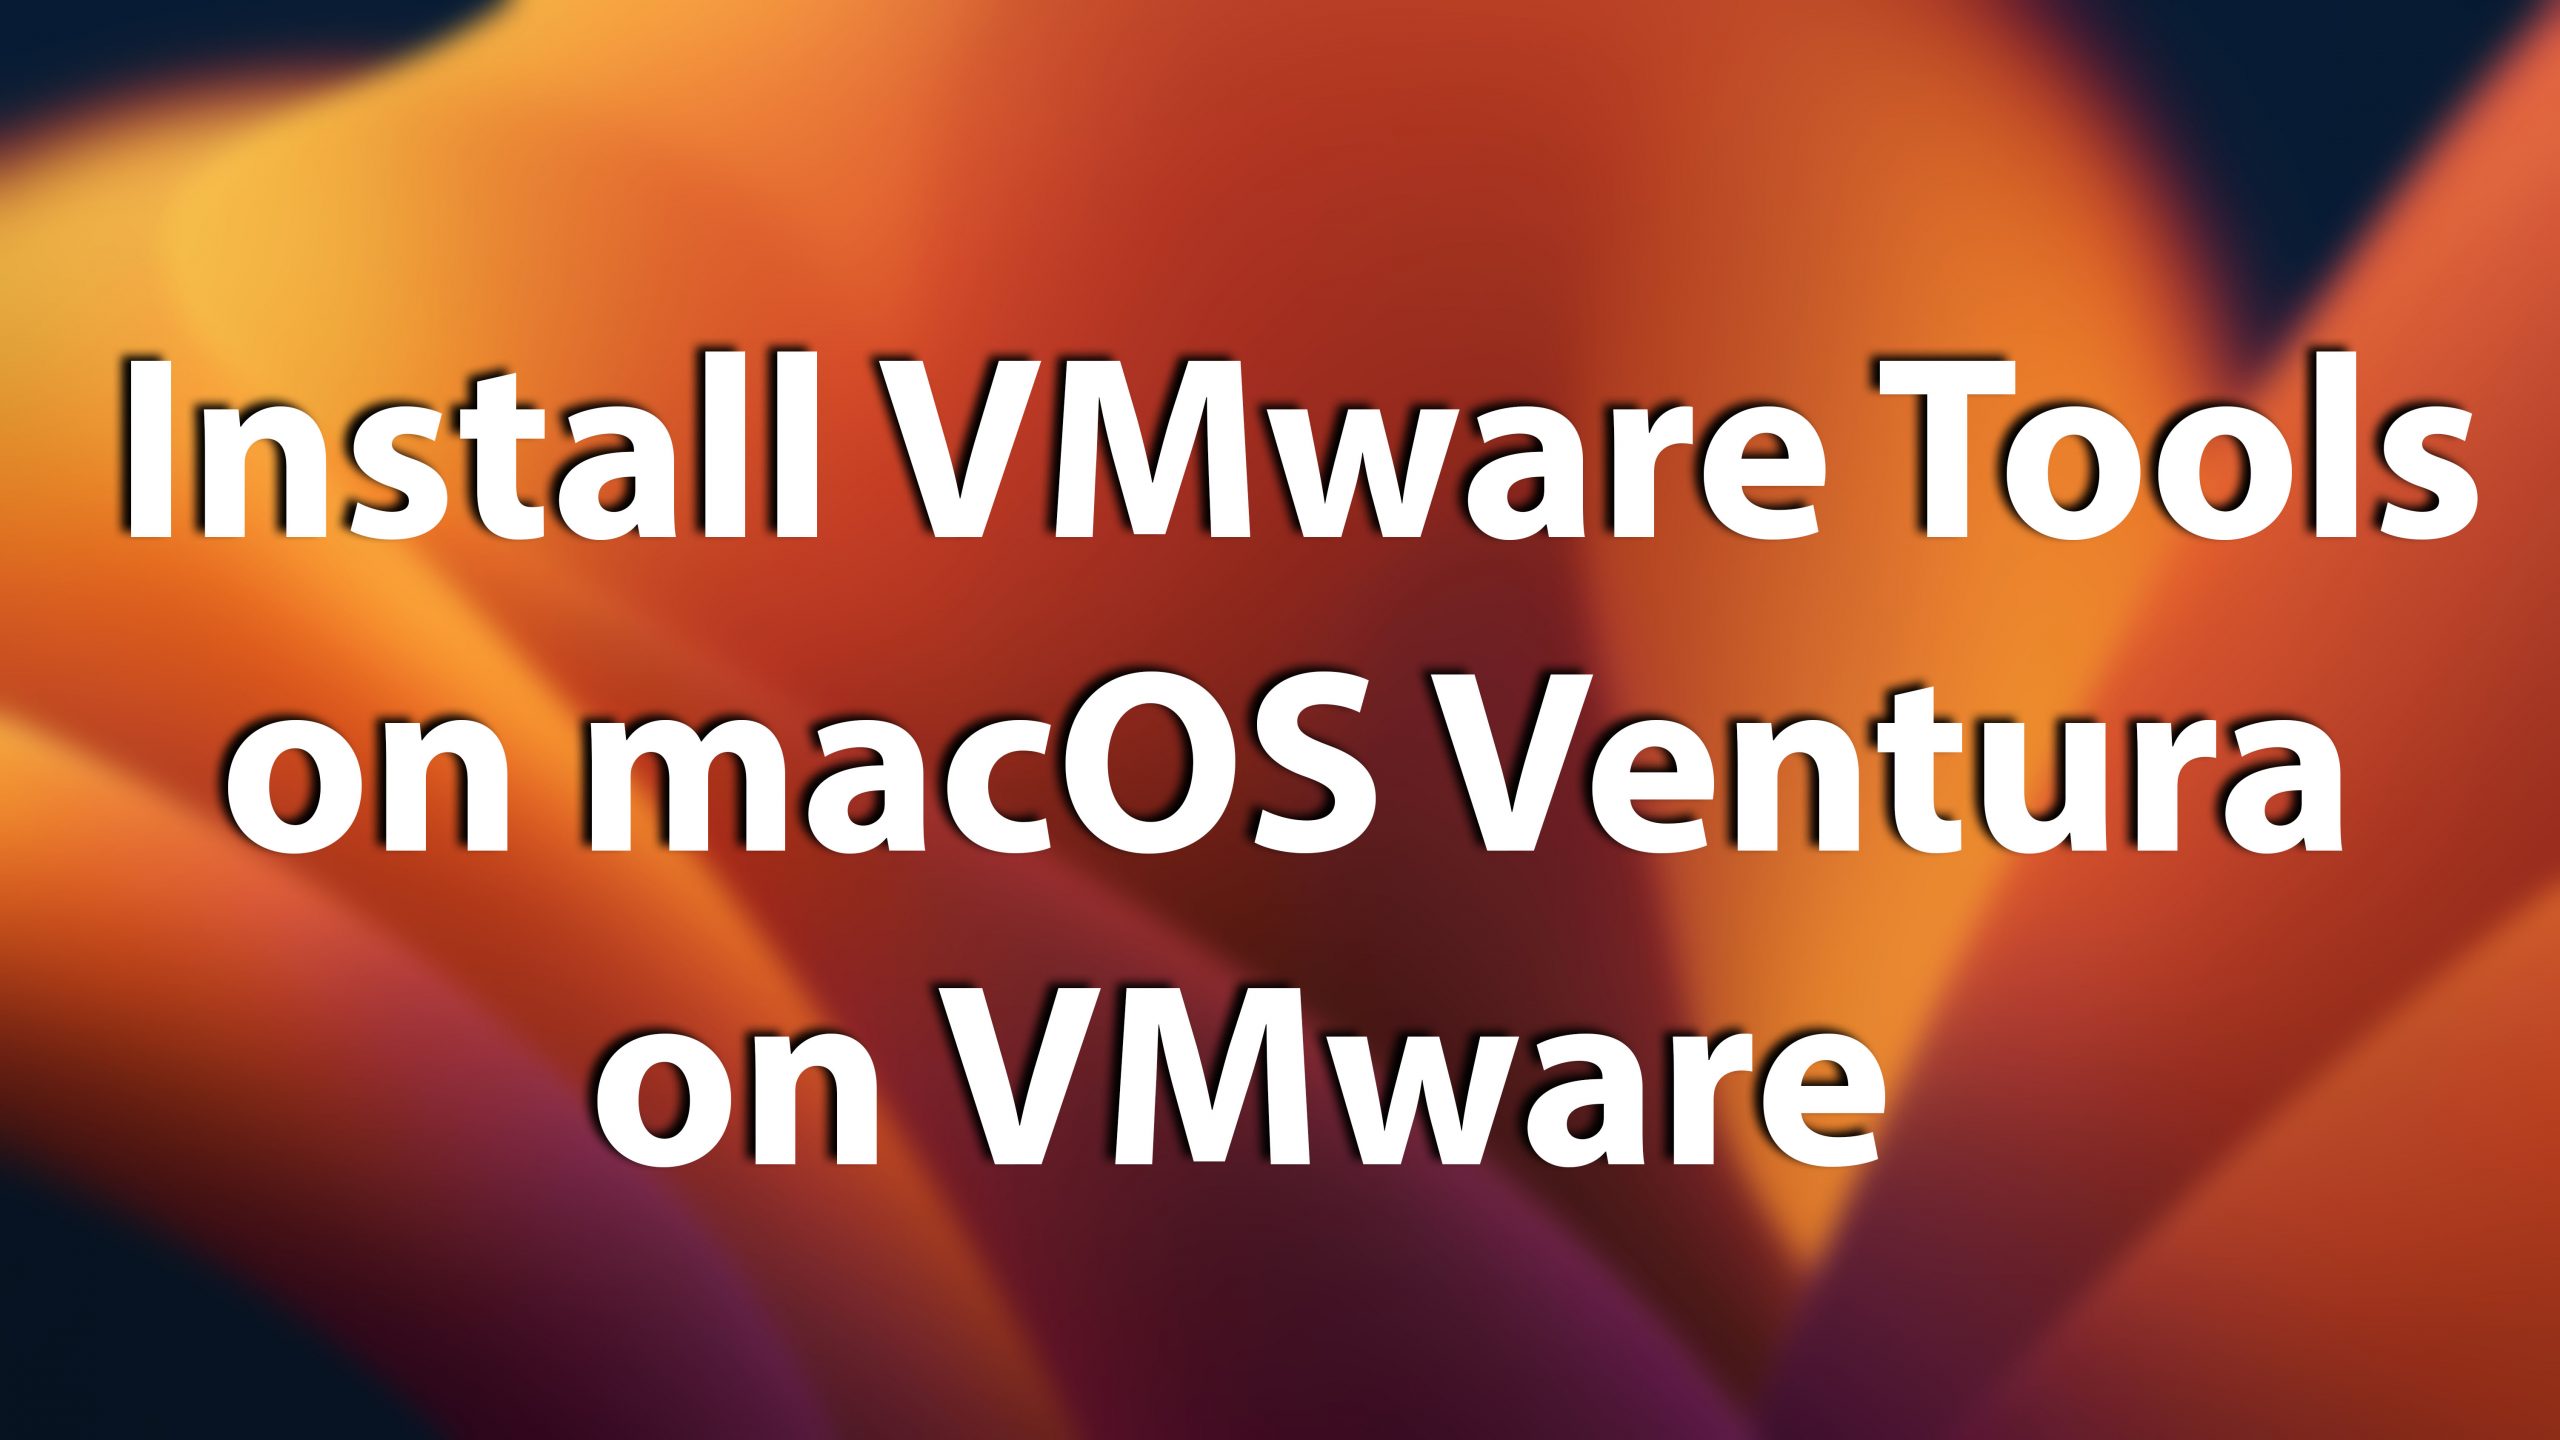 How to Install VMware Tools on macOS Ventura on VMware?